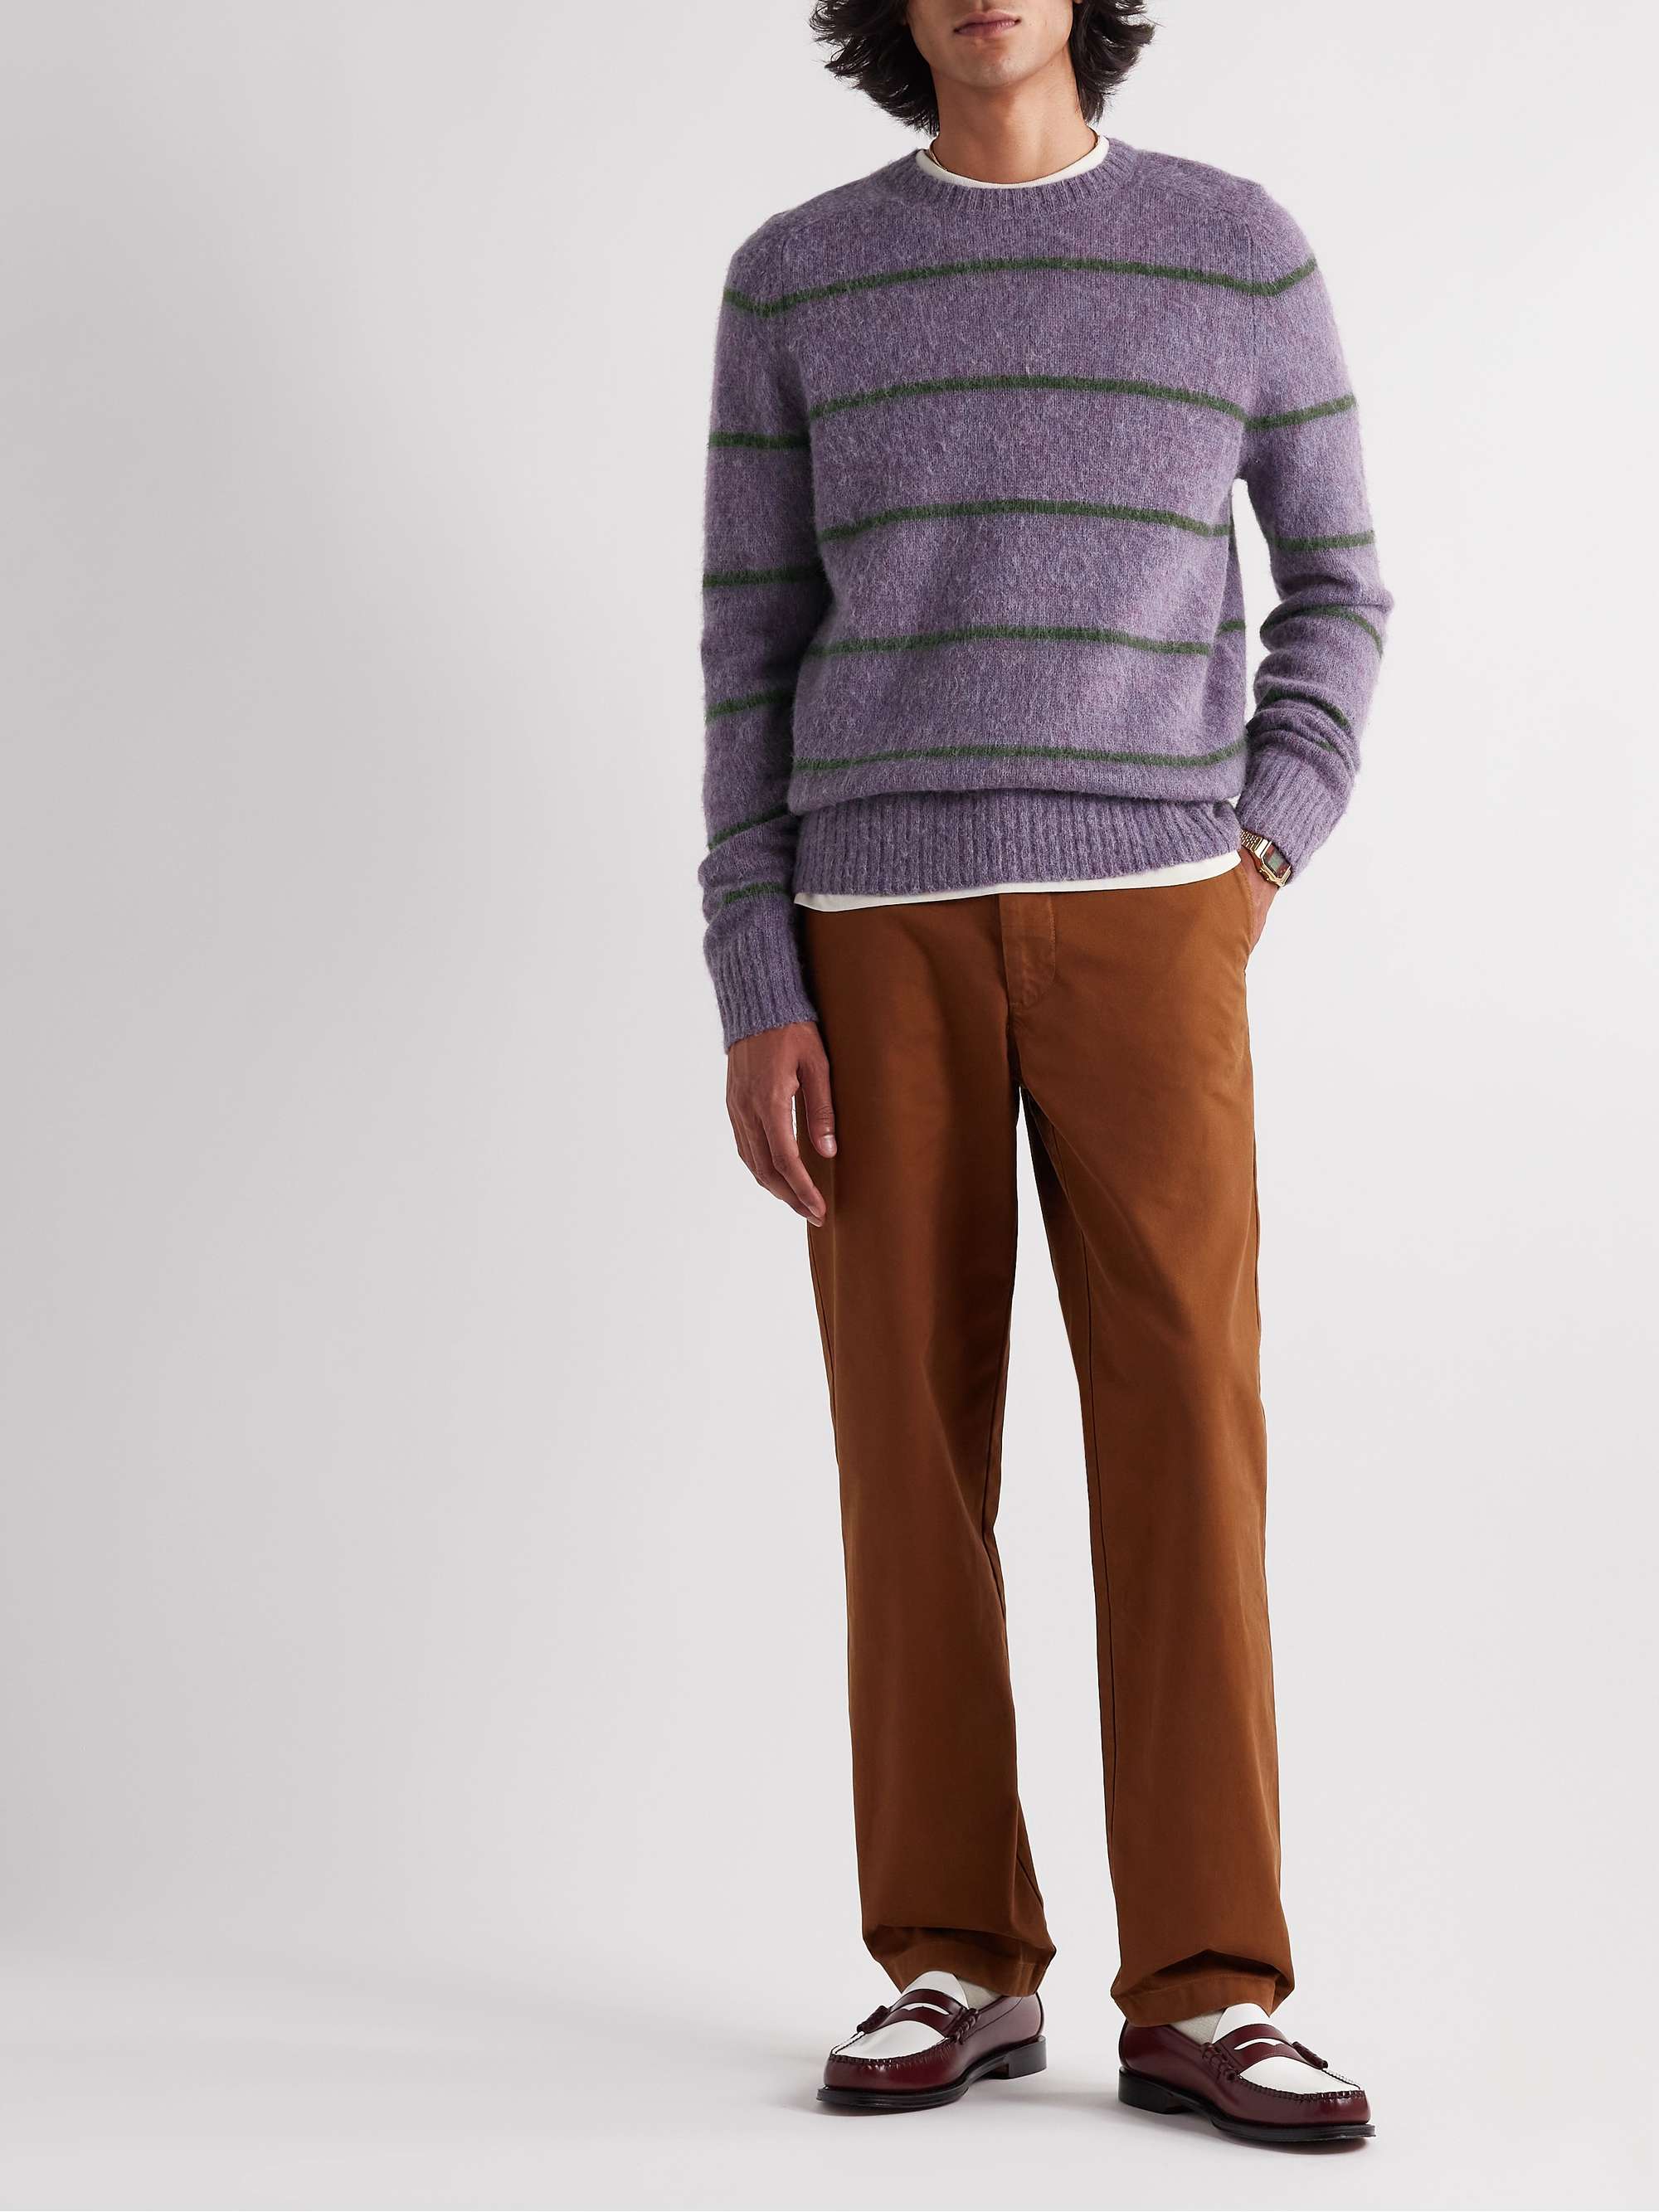 J.CREW Shetland Marvin Striped Wool Sweater for Men | MR PORTER